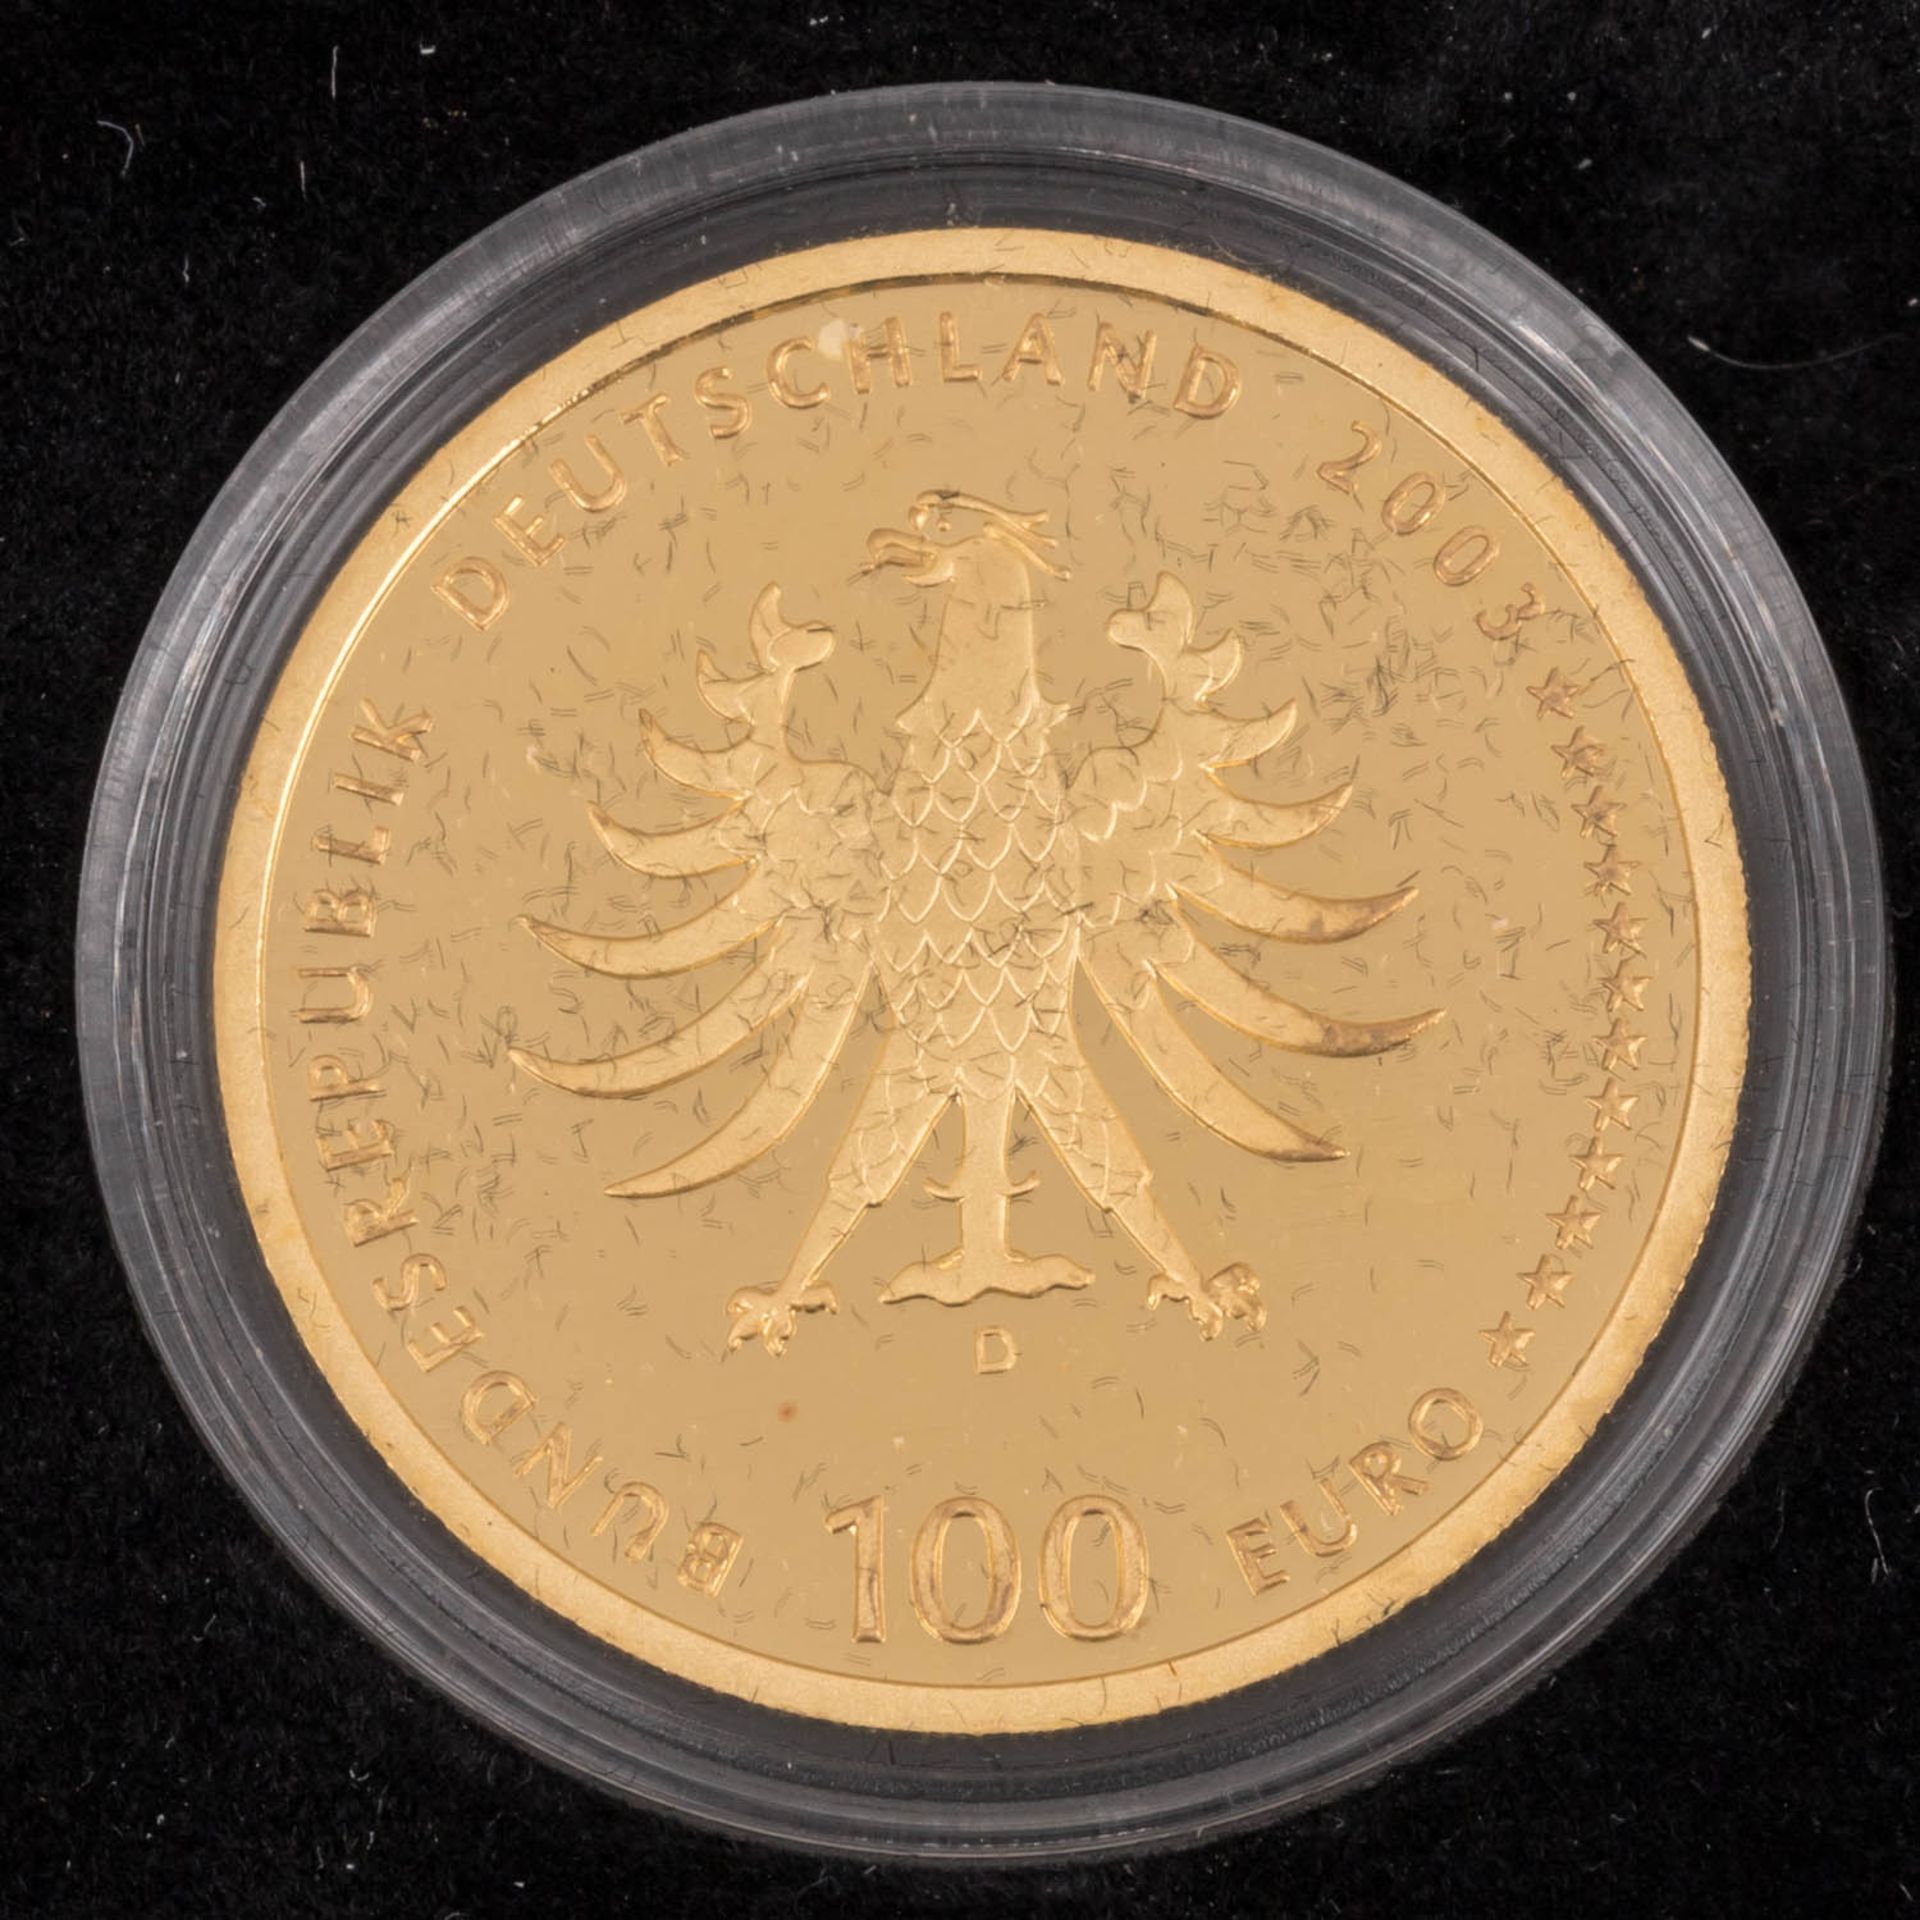 BRD/GOLD - 100 Euro 2003/D - Bild 3 aus 3